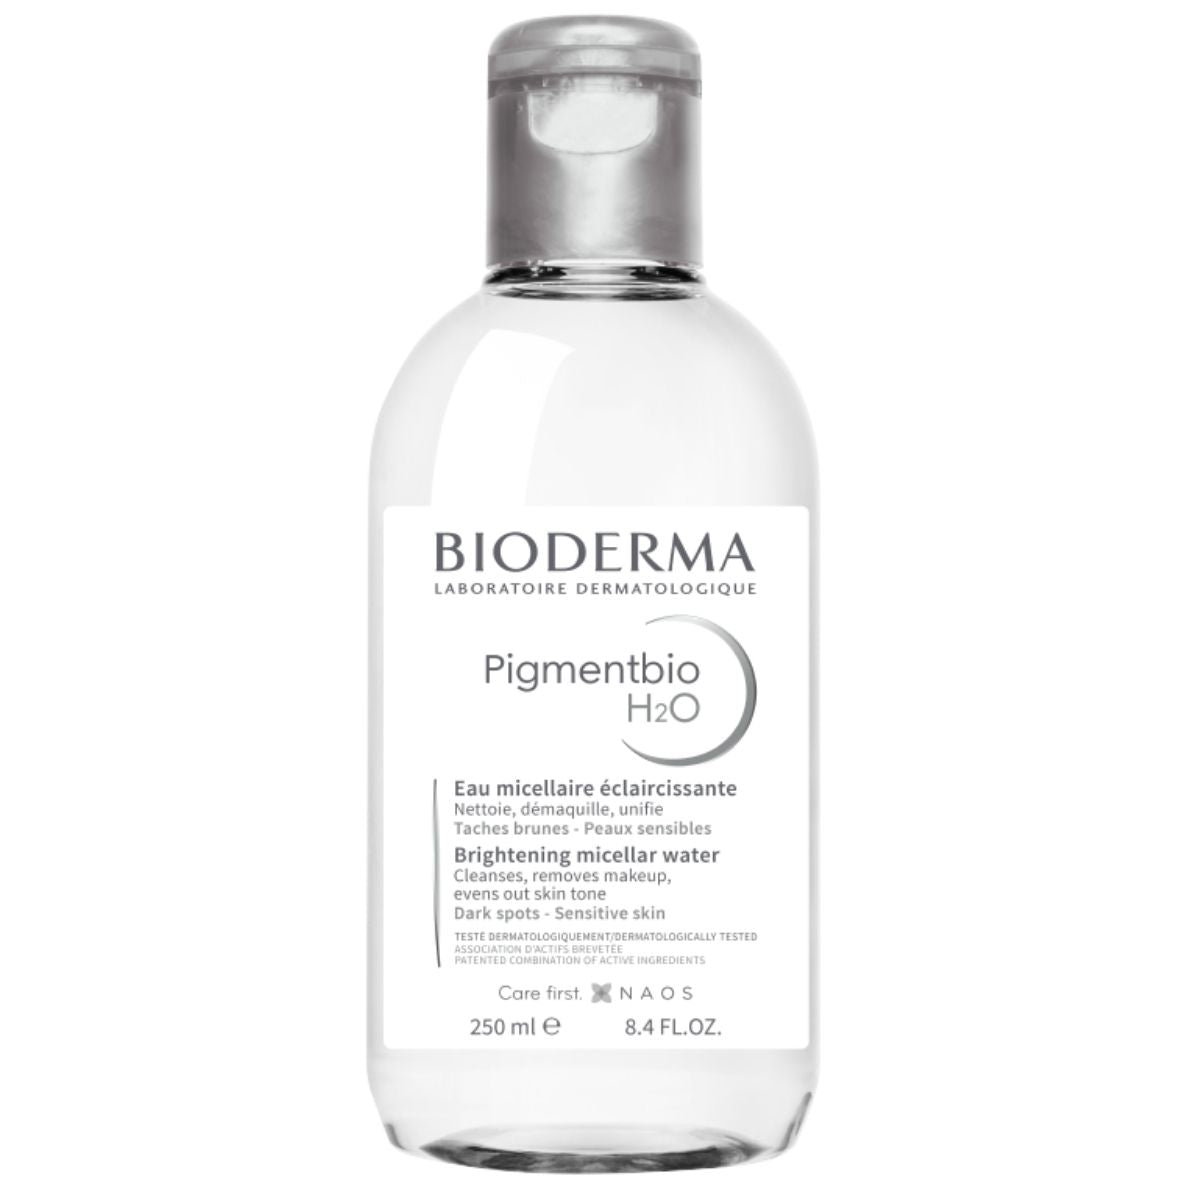 Bioderma Pigmentbio H20 Micellar Water